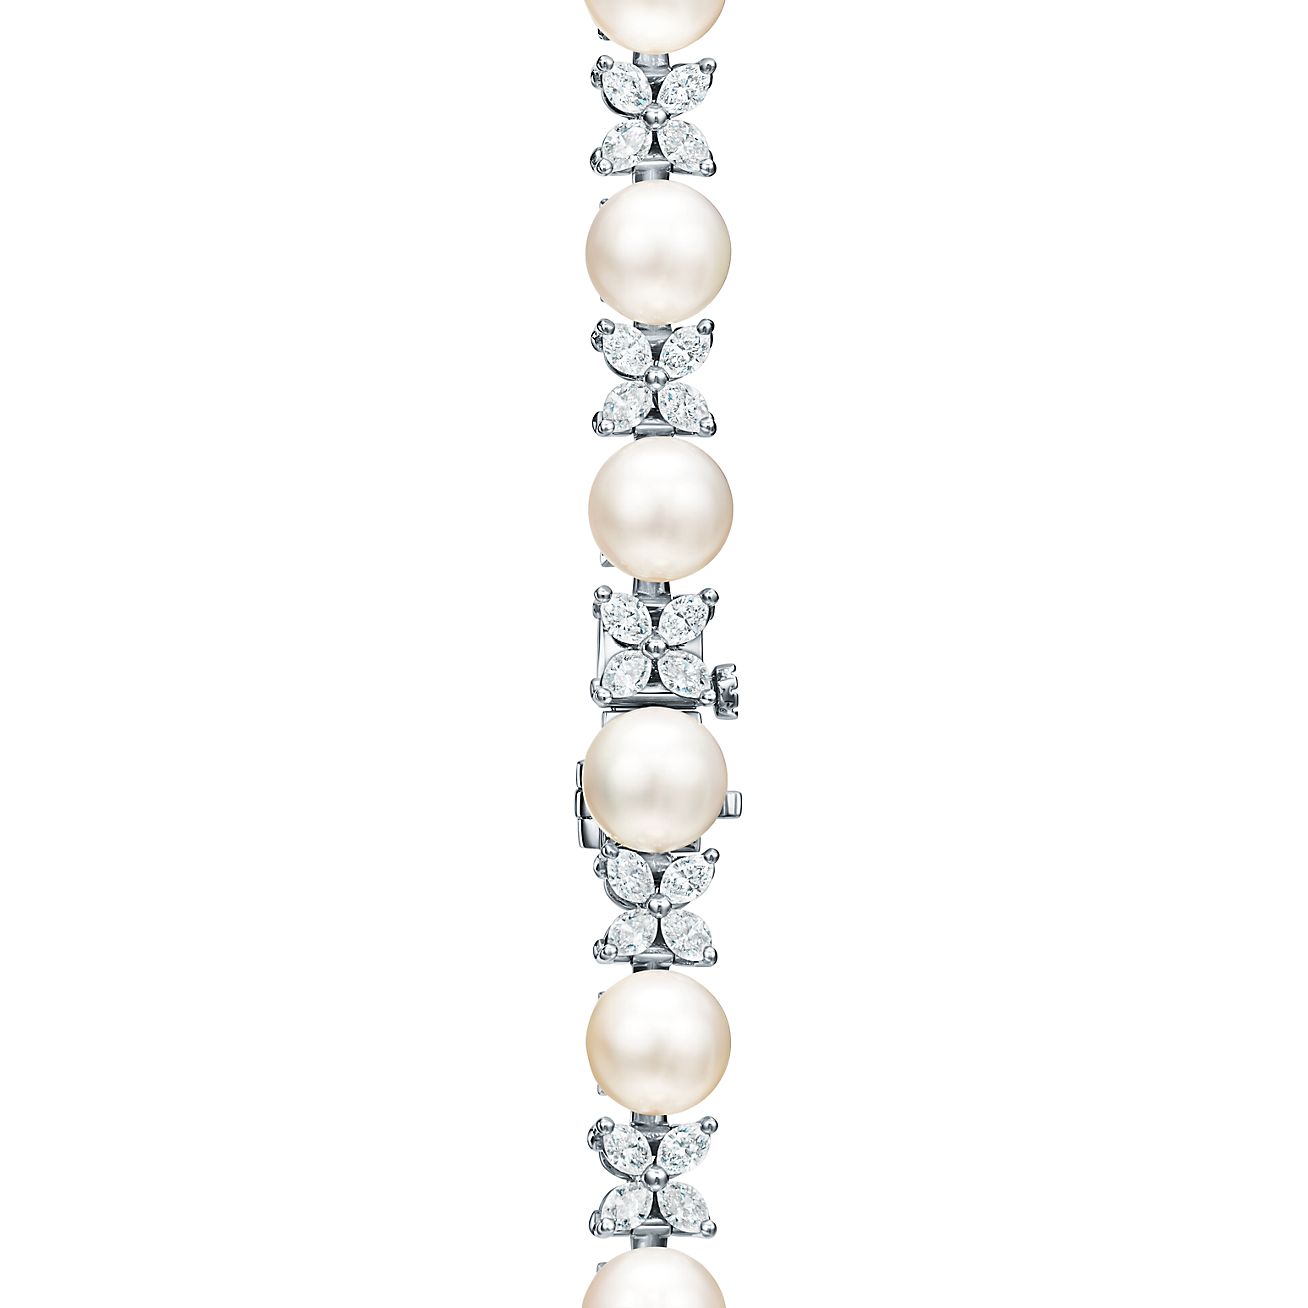 jewelryposter #opaljewelry #tiffanyjewelry #white #gold #tennis #bracelet